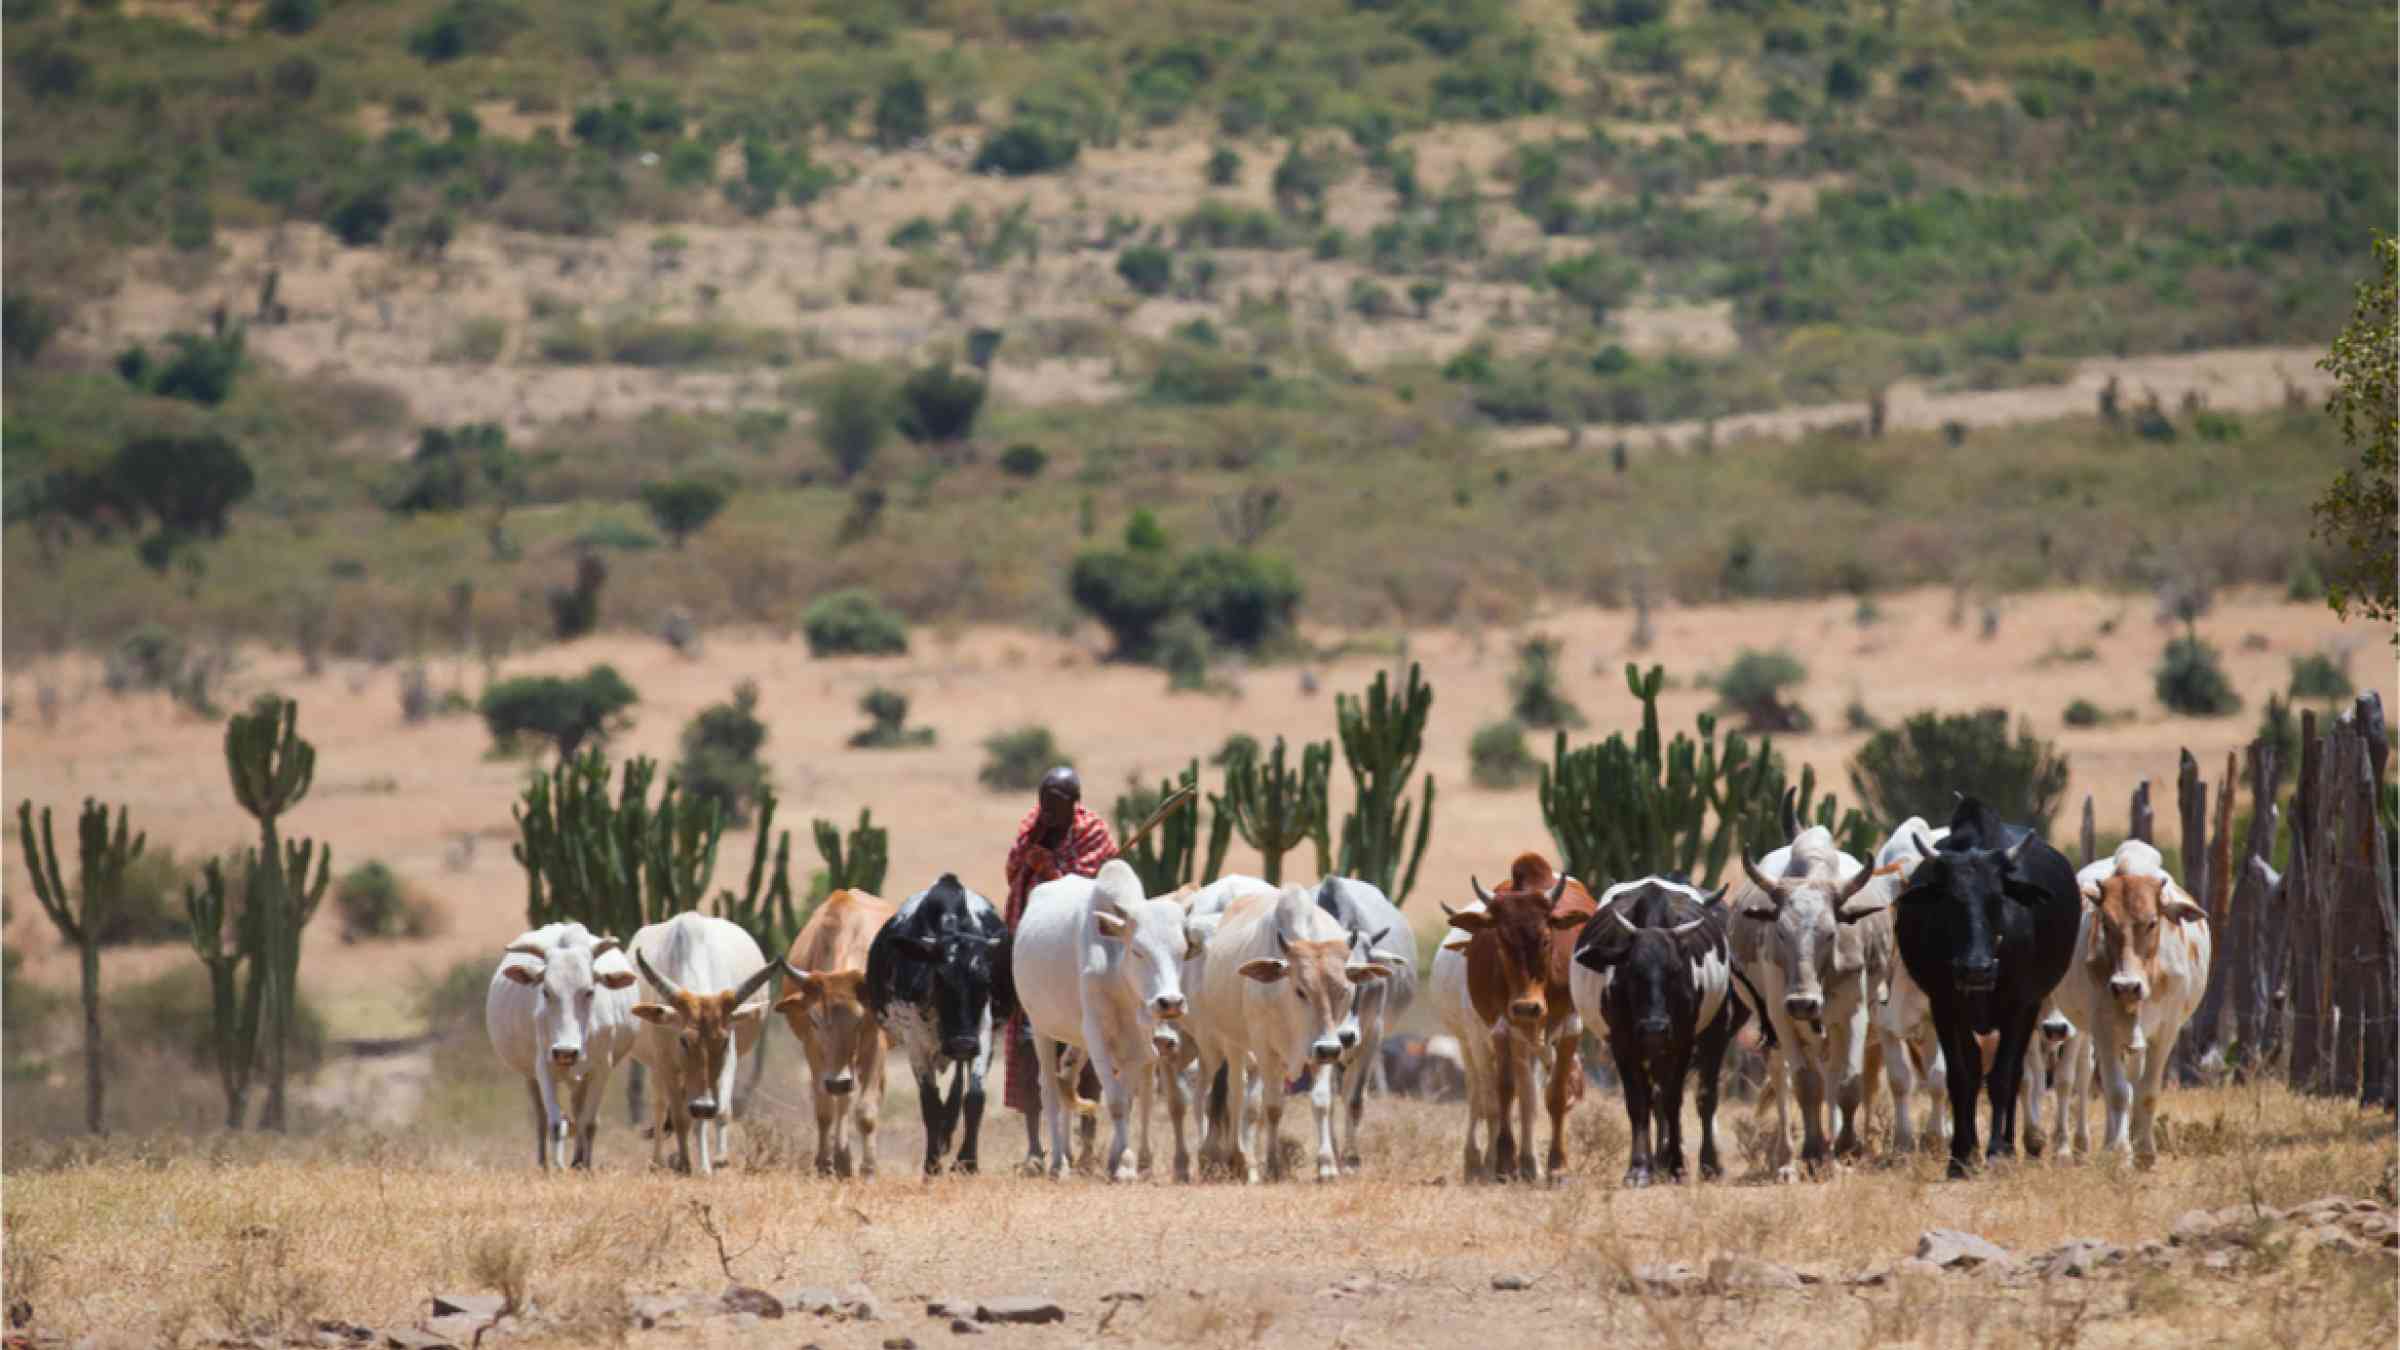 Masai Shepherd with herd of cows on African savannah in Kenya.